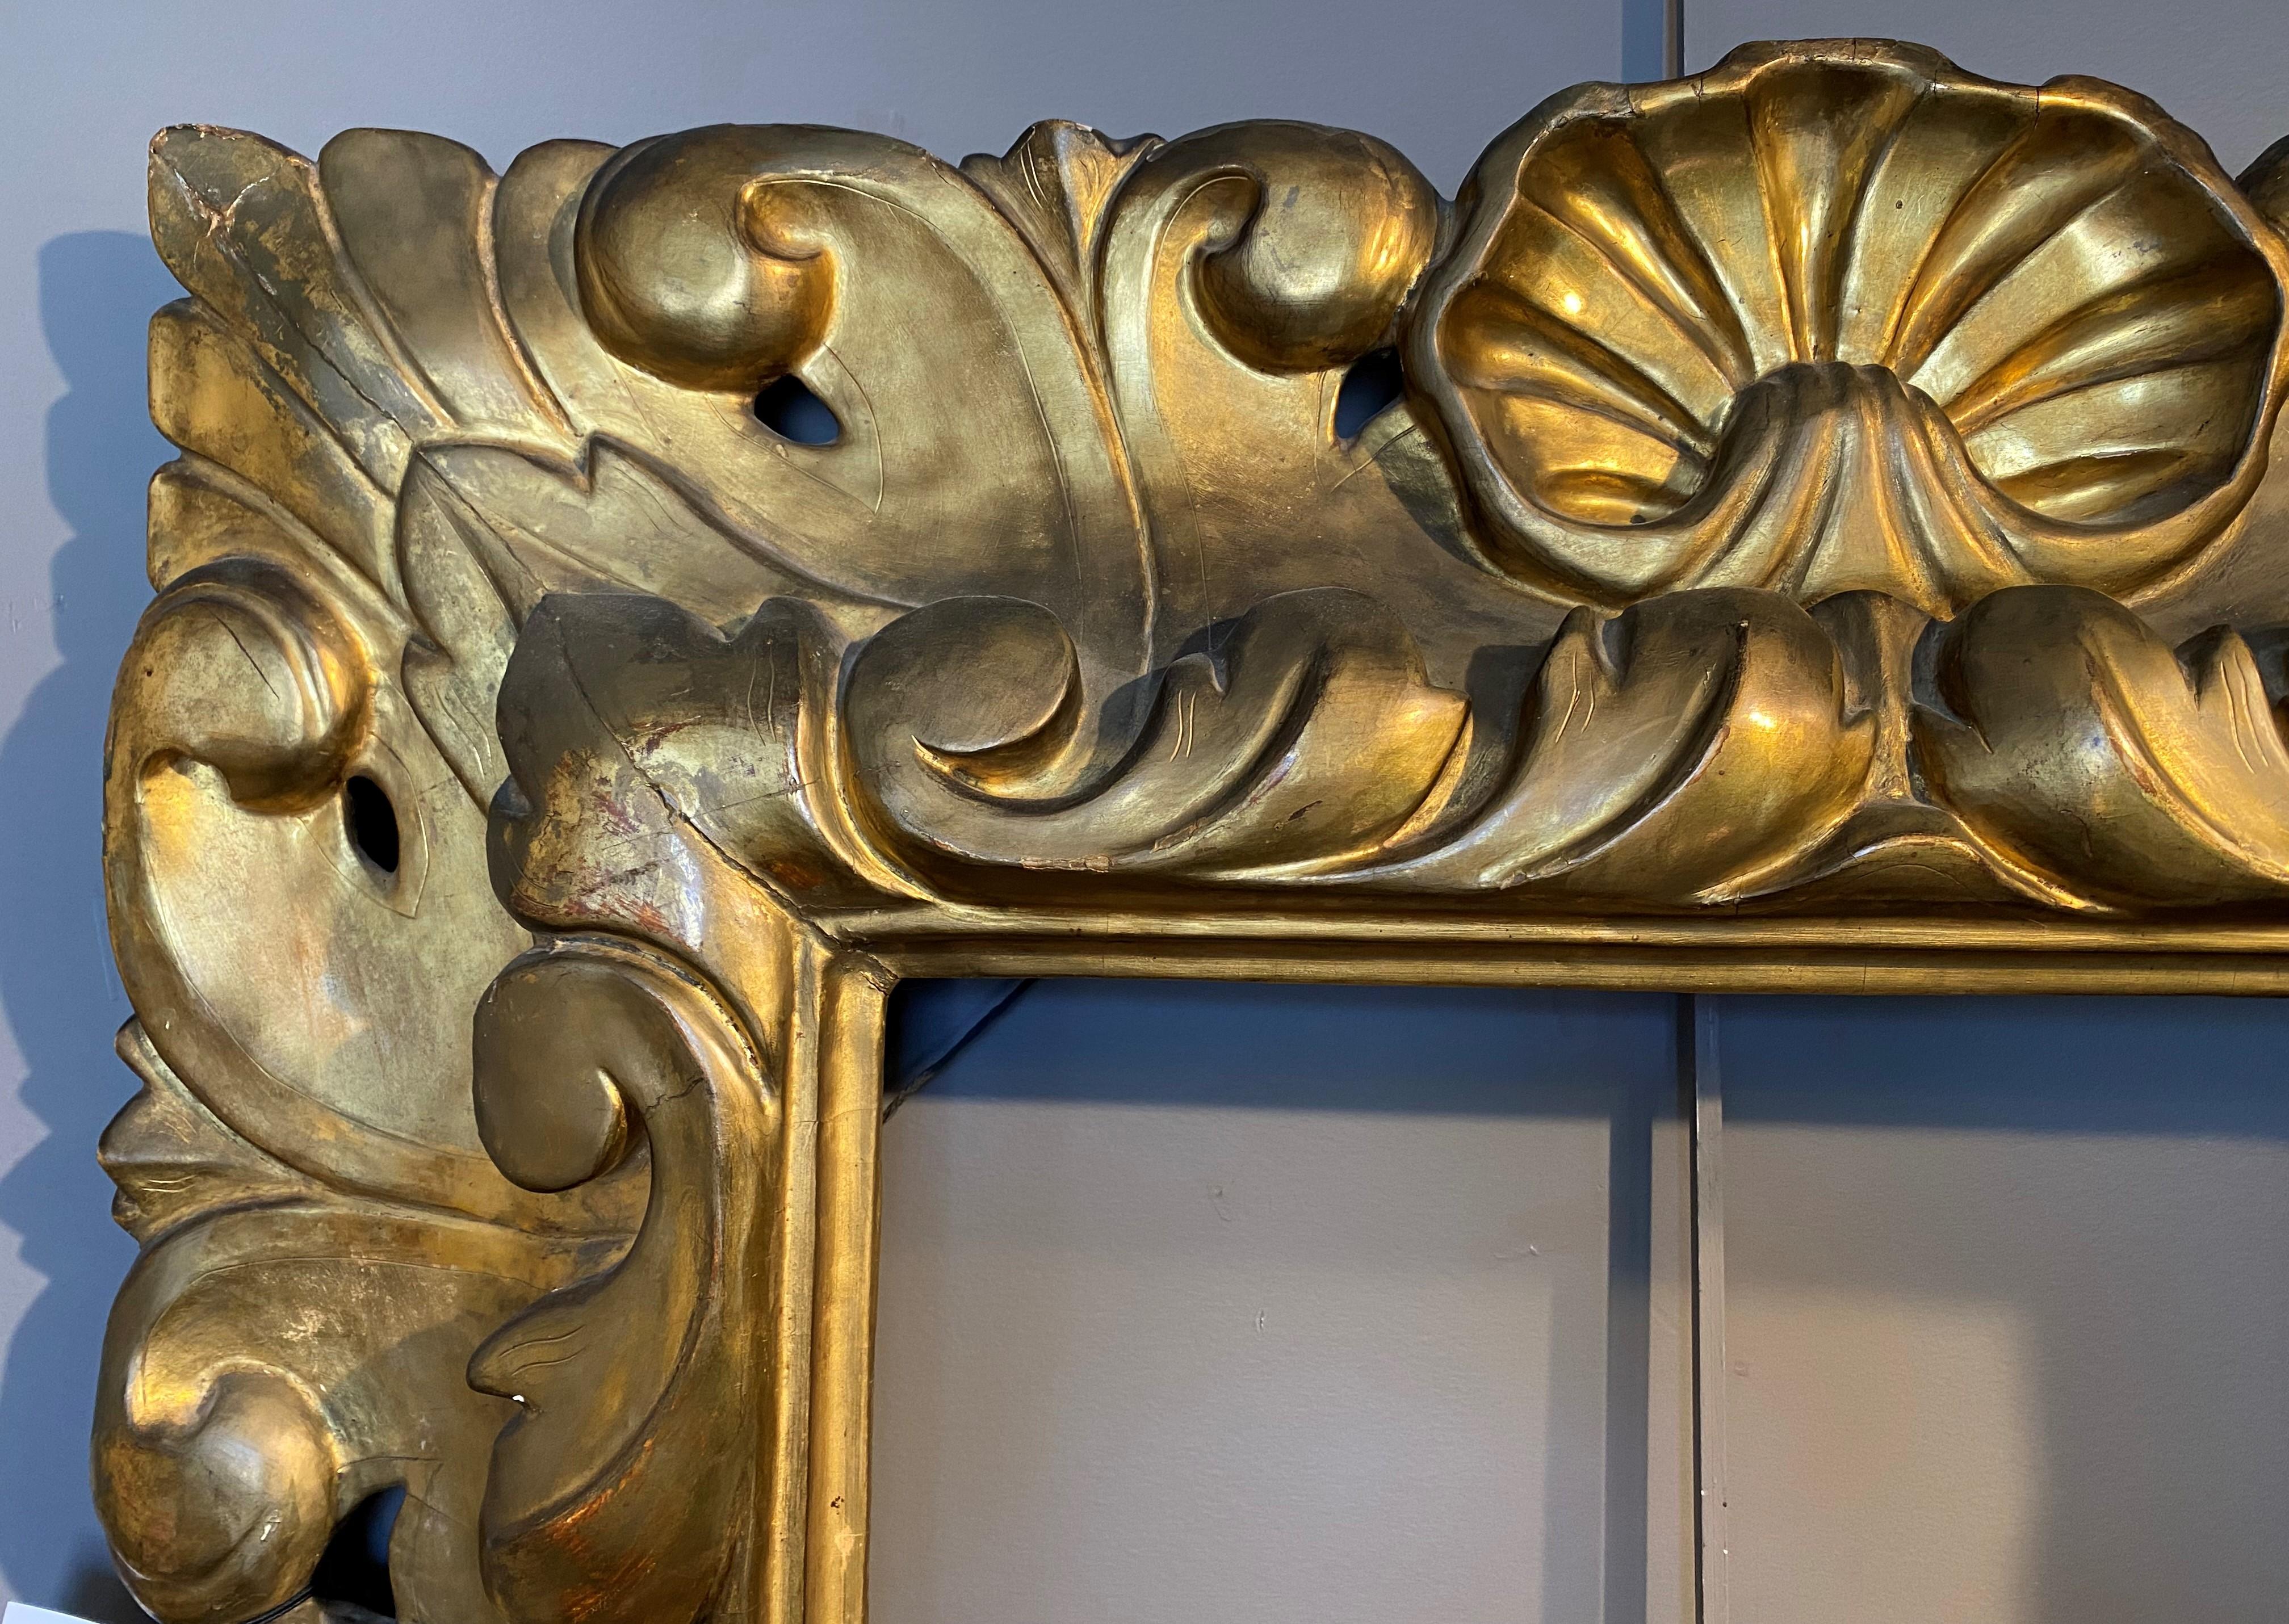 Ein feiner, durchbrochen geschnitzter Rahmen aus vergoldetem Holz mit Muscheldekoration im Rokokostil, wahrscheinlich italienischer Herkunft, aus dem 17./18. Jahrhundert, in sehr gutem Zustand, mit kleinen vergoldeten Abnutzungen, Unvollkommenheiten